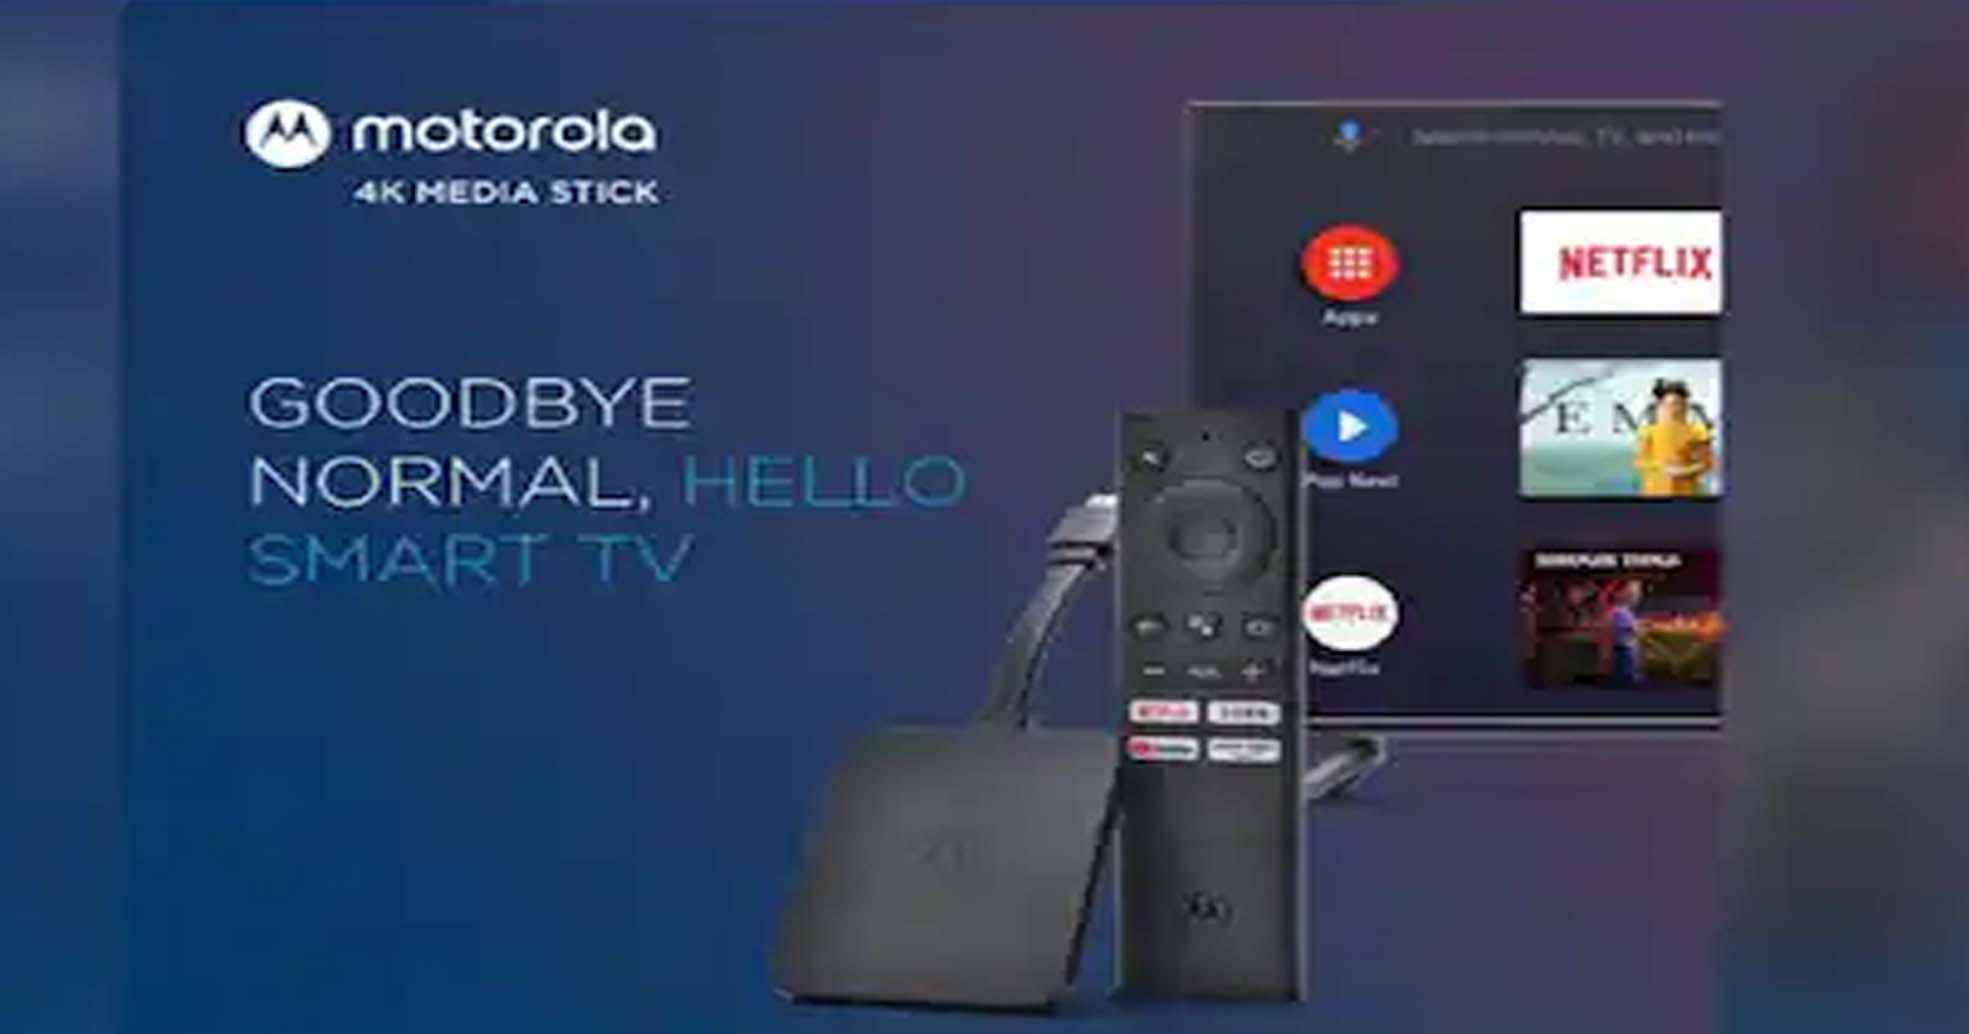 भारत में लॉन्च हुआ Motorola का नया 4K Android TV Stick